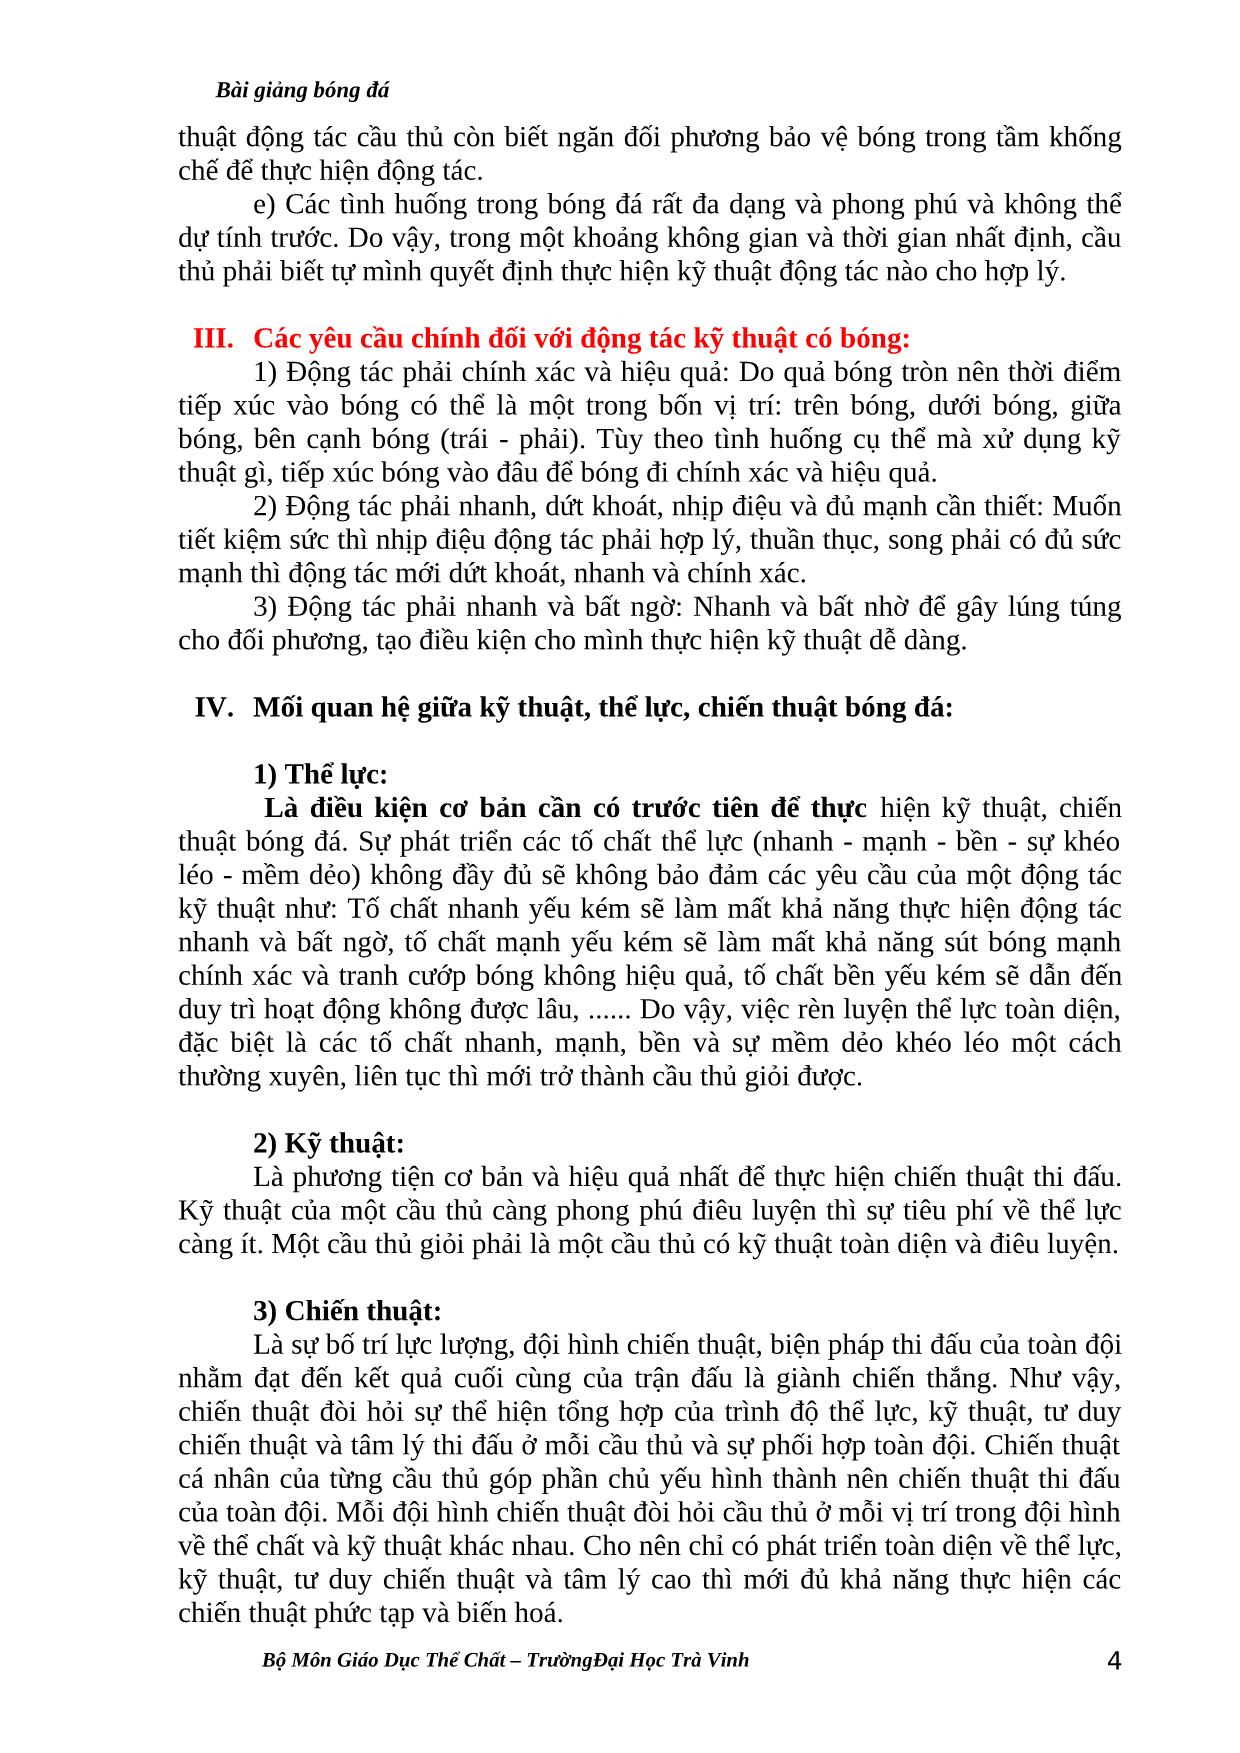 Giáo trình Bóng đá trang 4